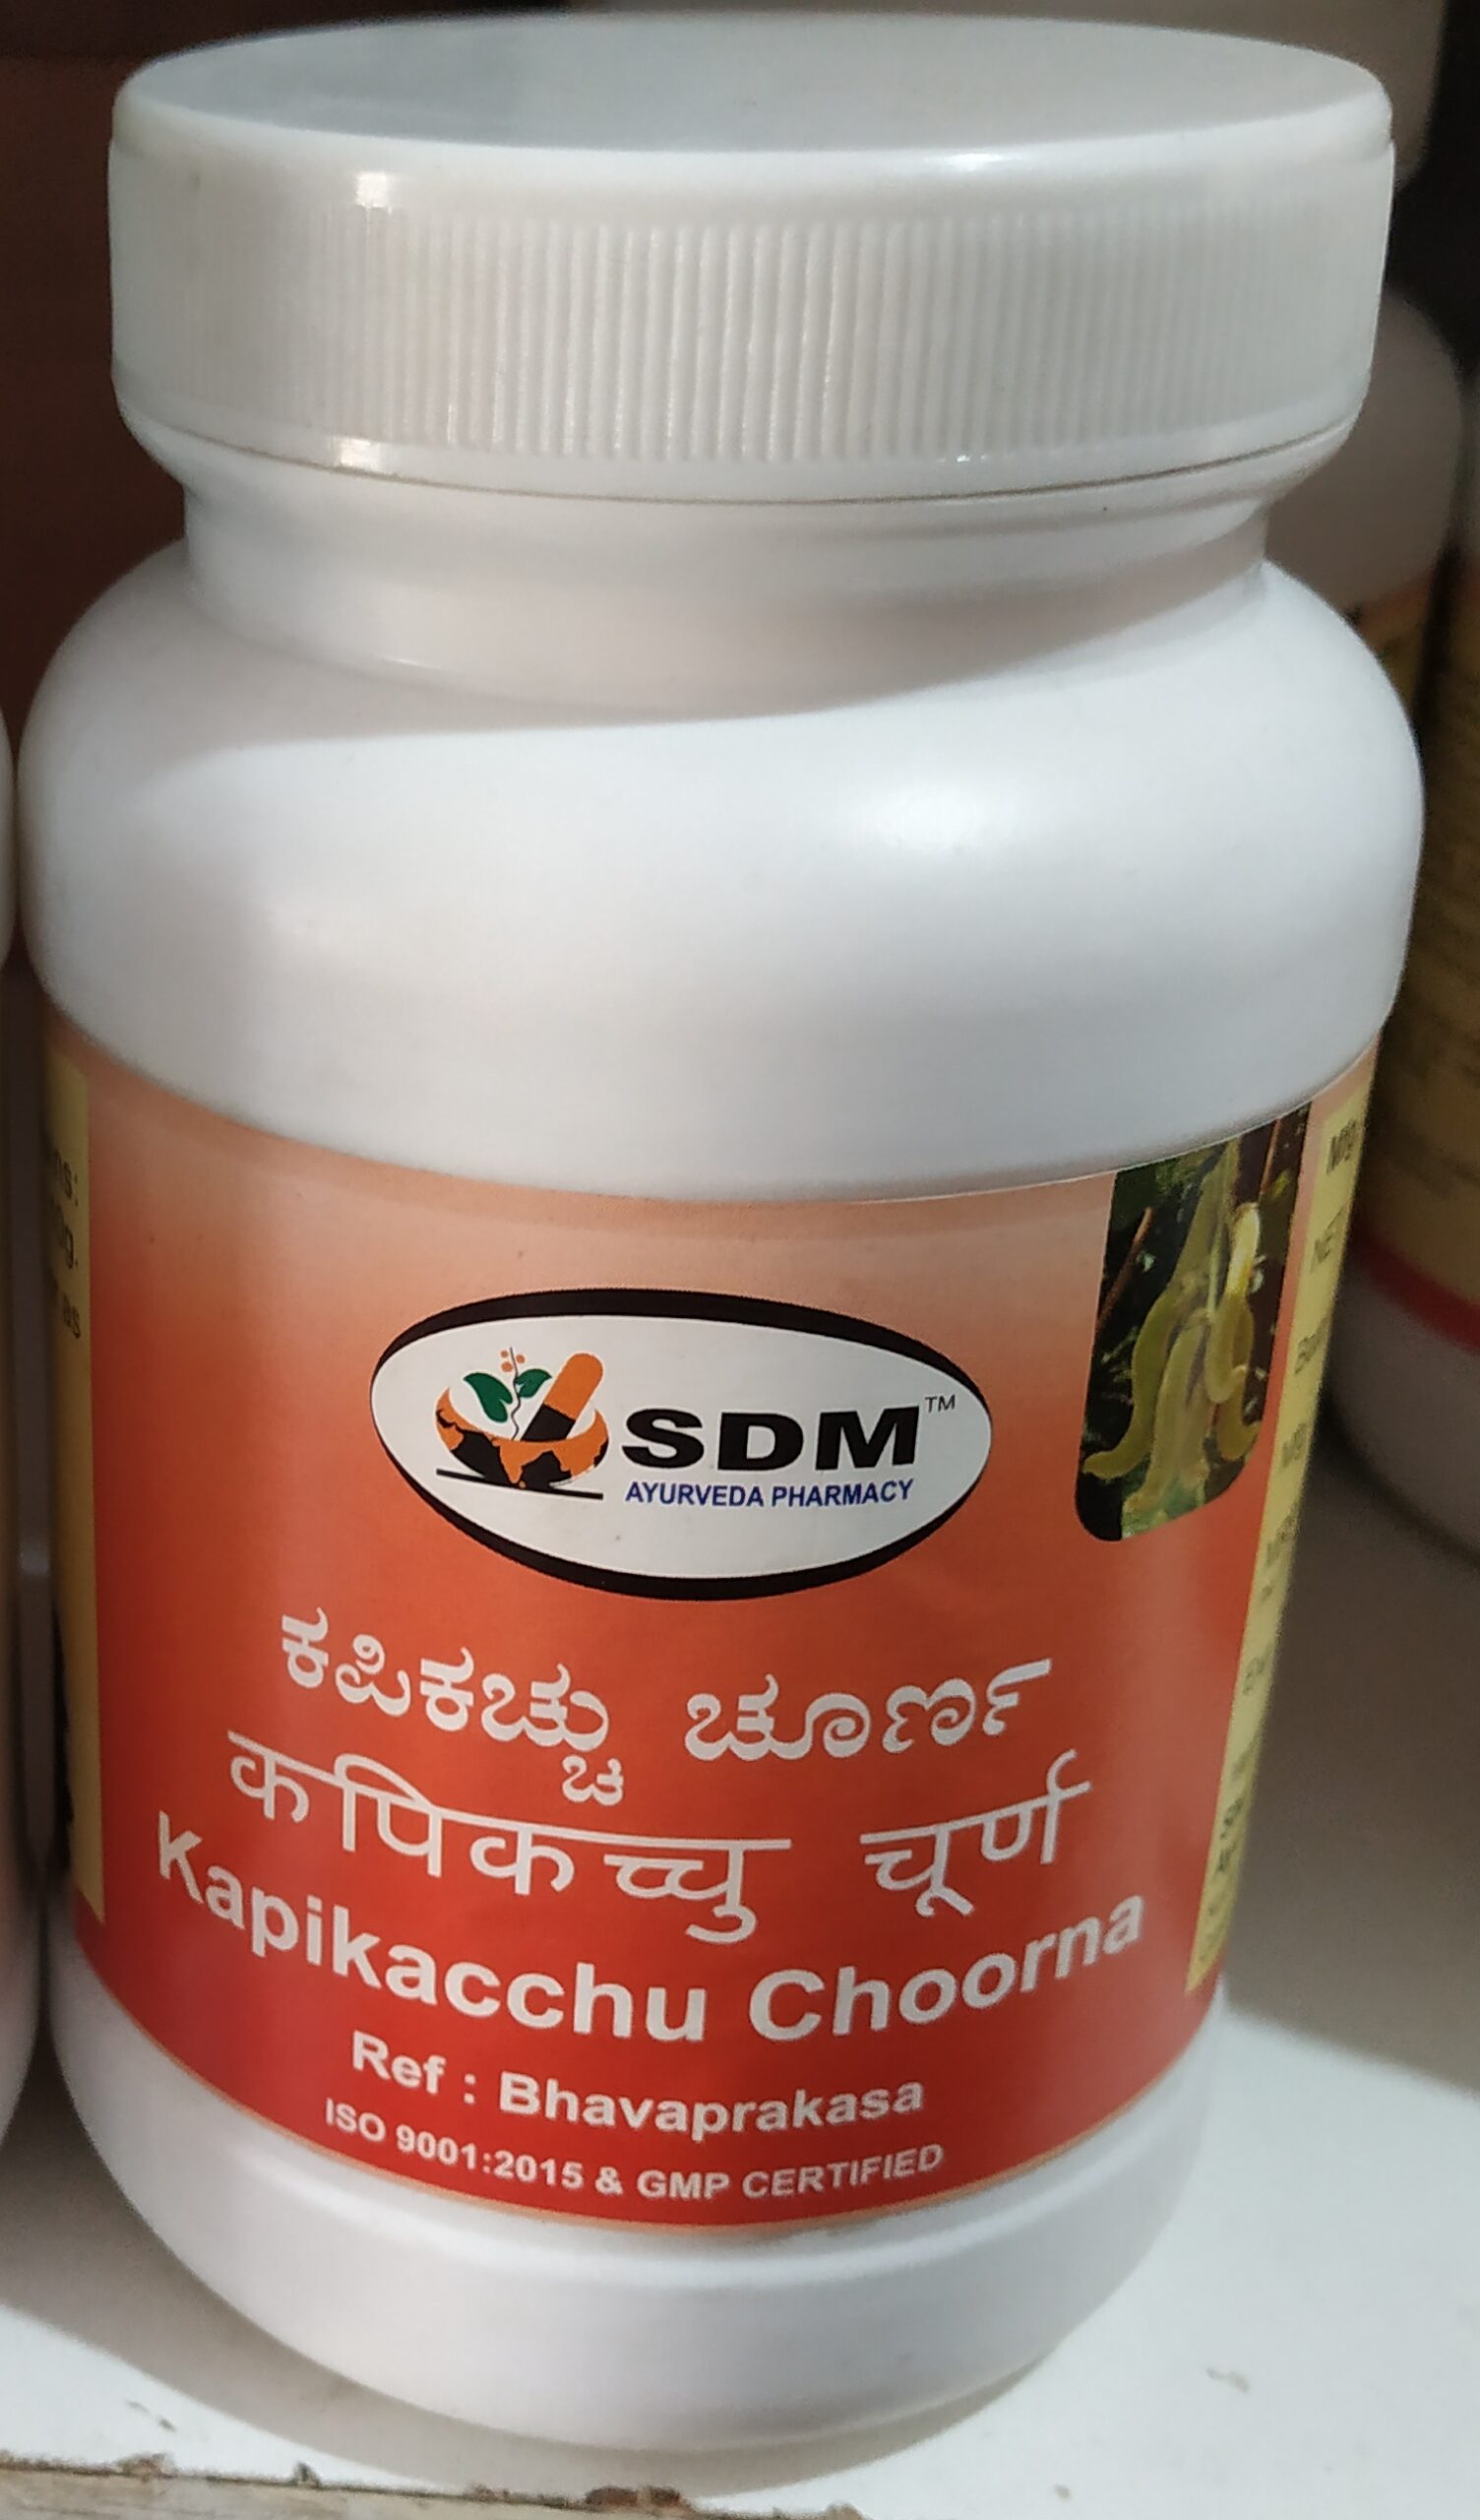 kapikachchhu choorna 2kg upto 20% off sdm ayurvedya